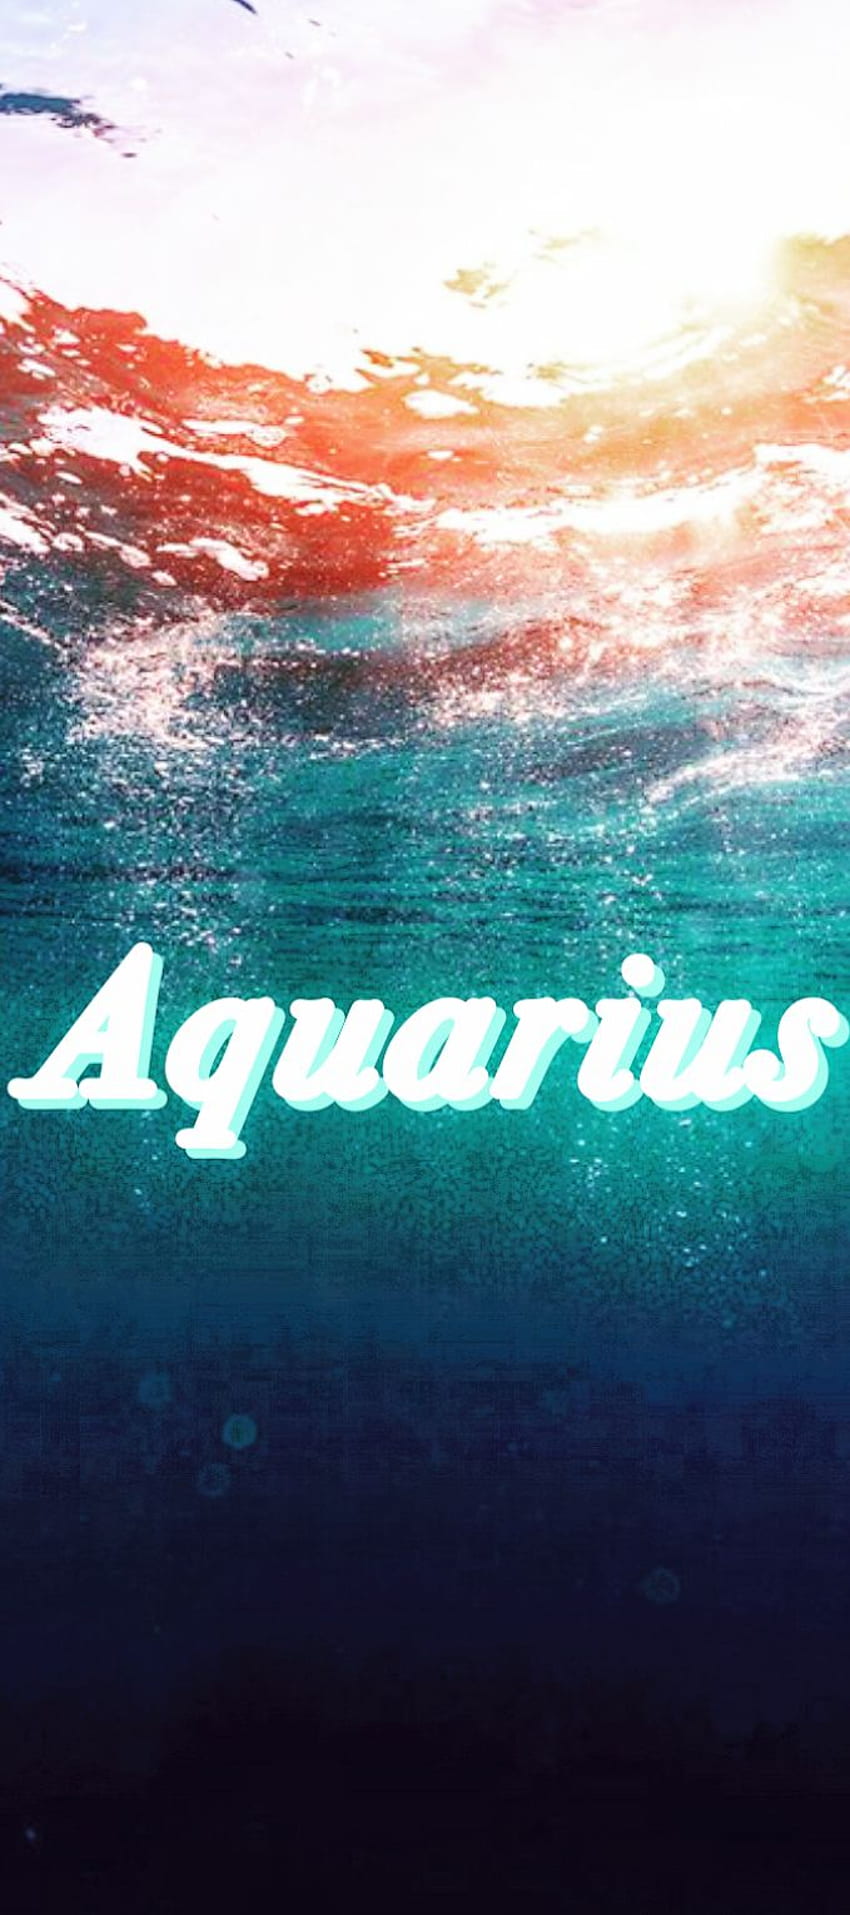 aquarius mobile wallpapers Wallpaper Download  MobCup